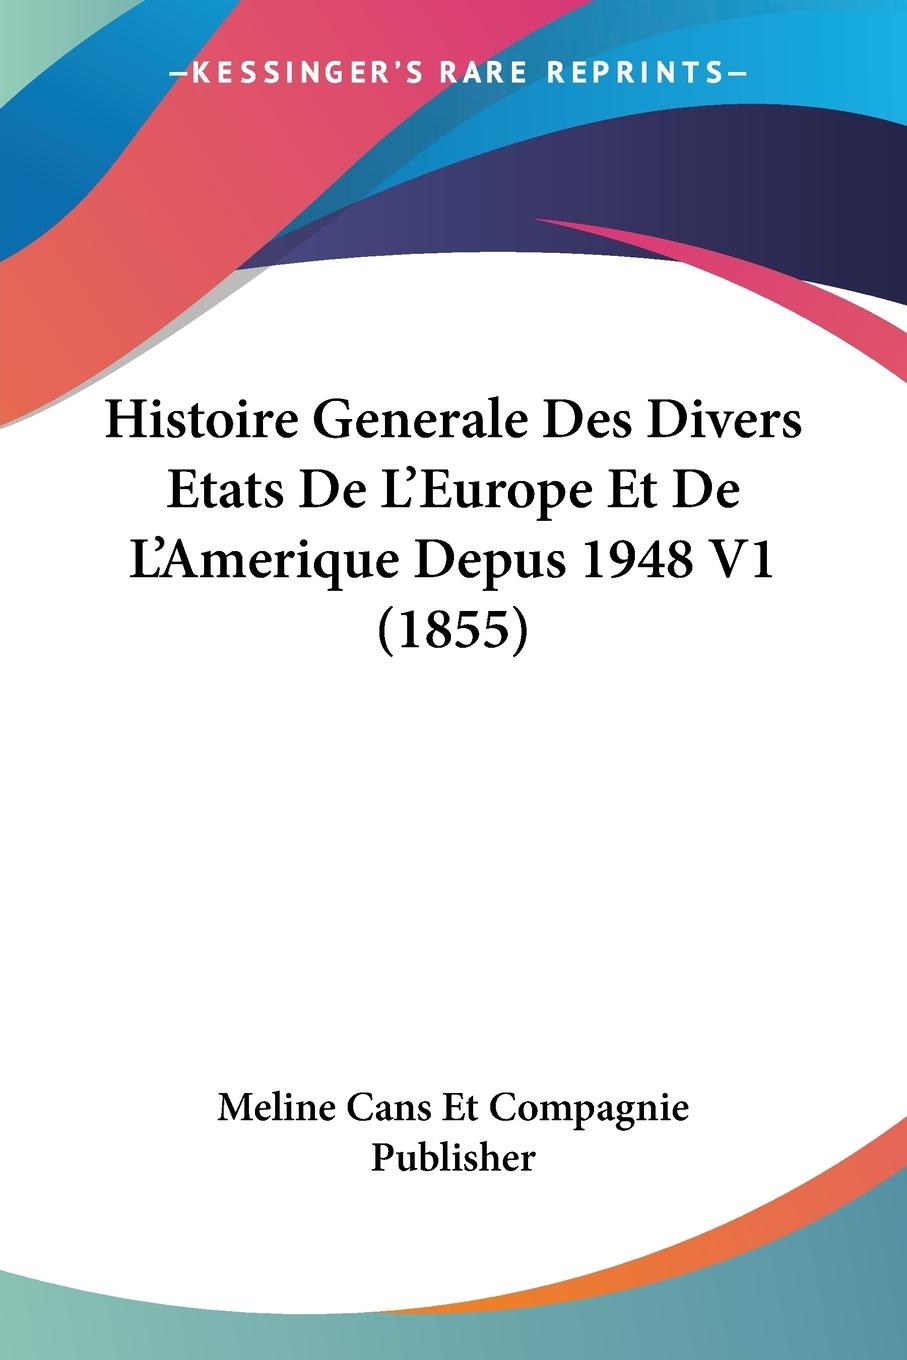 Histoire Generale Des Divers Etats De L Europe Et De L Amerique Depus 1948 V1 (1855) - Meline Cans Et Compagnie Publisher